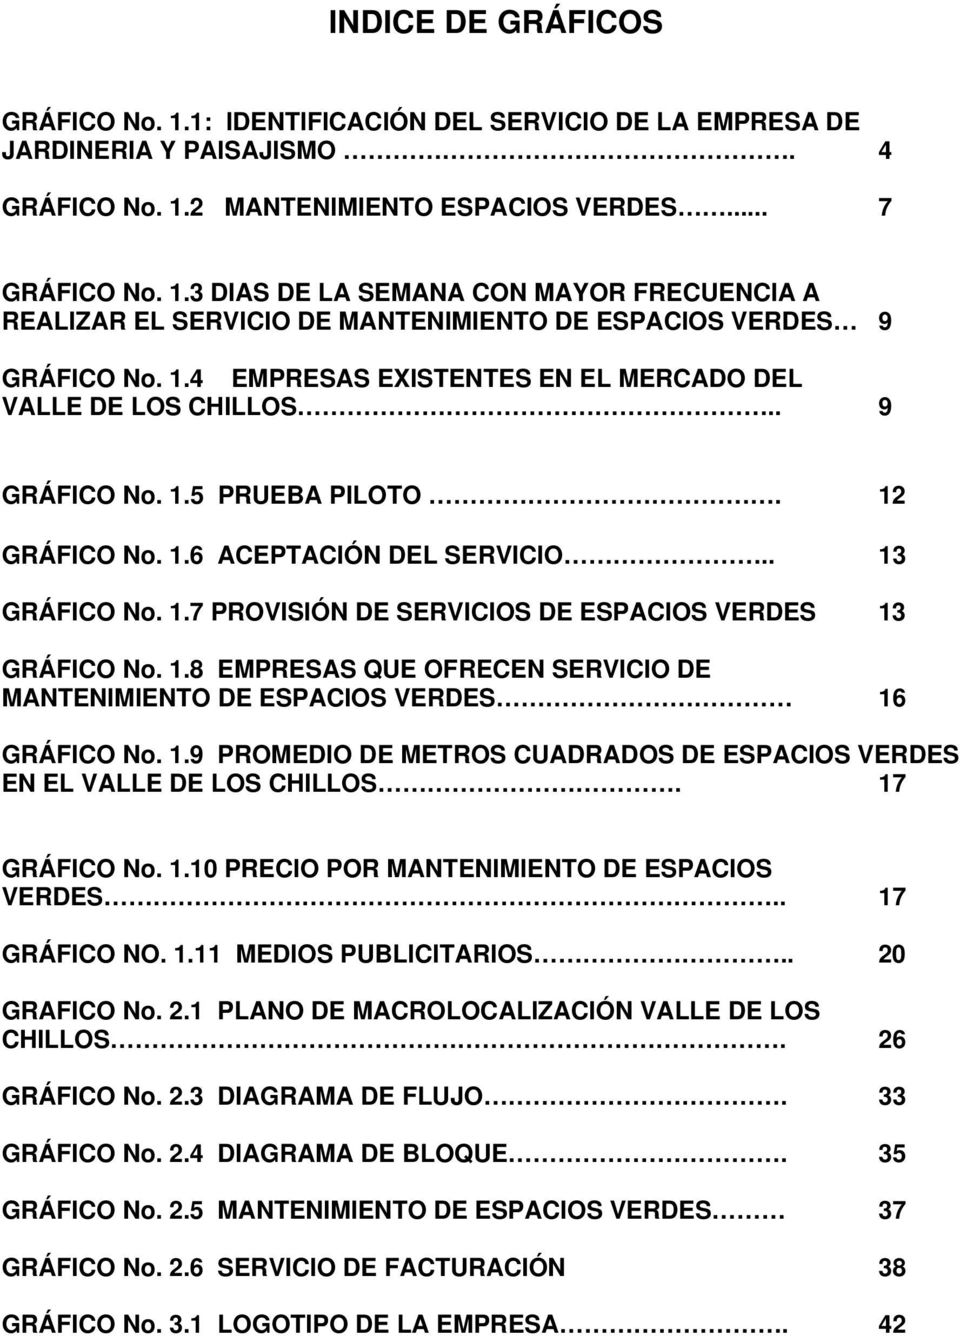 1.8 EMPRESAS QUE OFRECEN SERVICIO DE MANTENIMIENTO DE ESPACIOS VERDES 16 GRÁFICO No. 1.9 PROMEDIO DE METROS CUADRADOS DE ESPACIOS VERDES EN EL VALLE DE LOS CHILLOS. 17 GRÁFICO No. 1.10 PRECIO POR MANTENIMIENTO DE ESPACIOS VERDES.